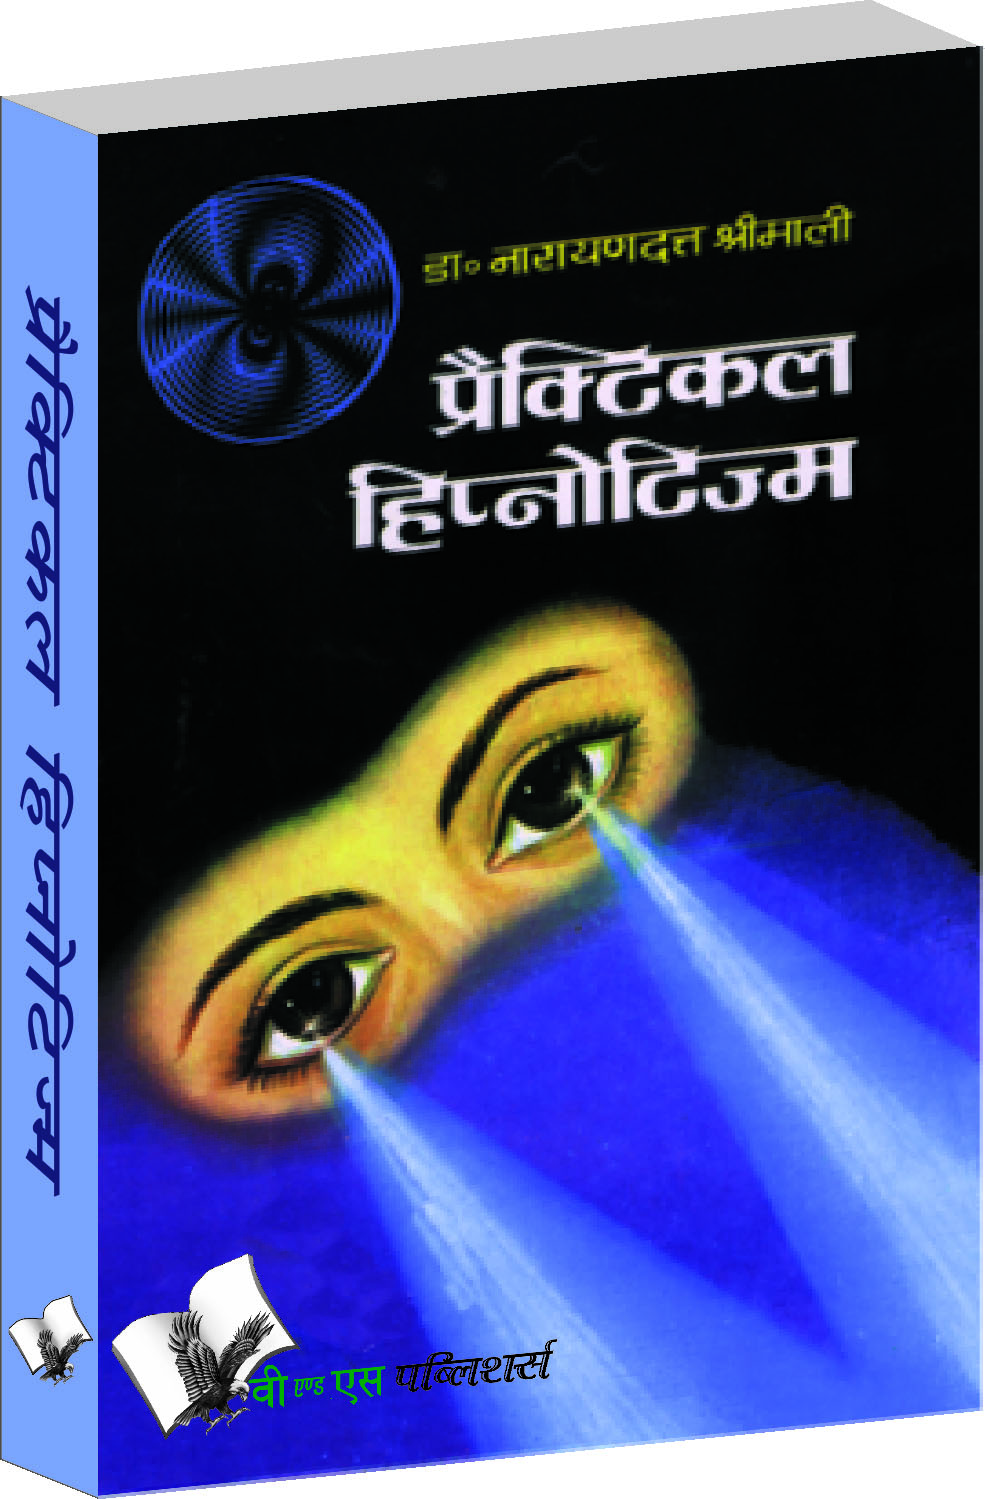 Practical Hypnotism (Hindi)-Practical ways to mesmerise, in Hindi